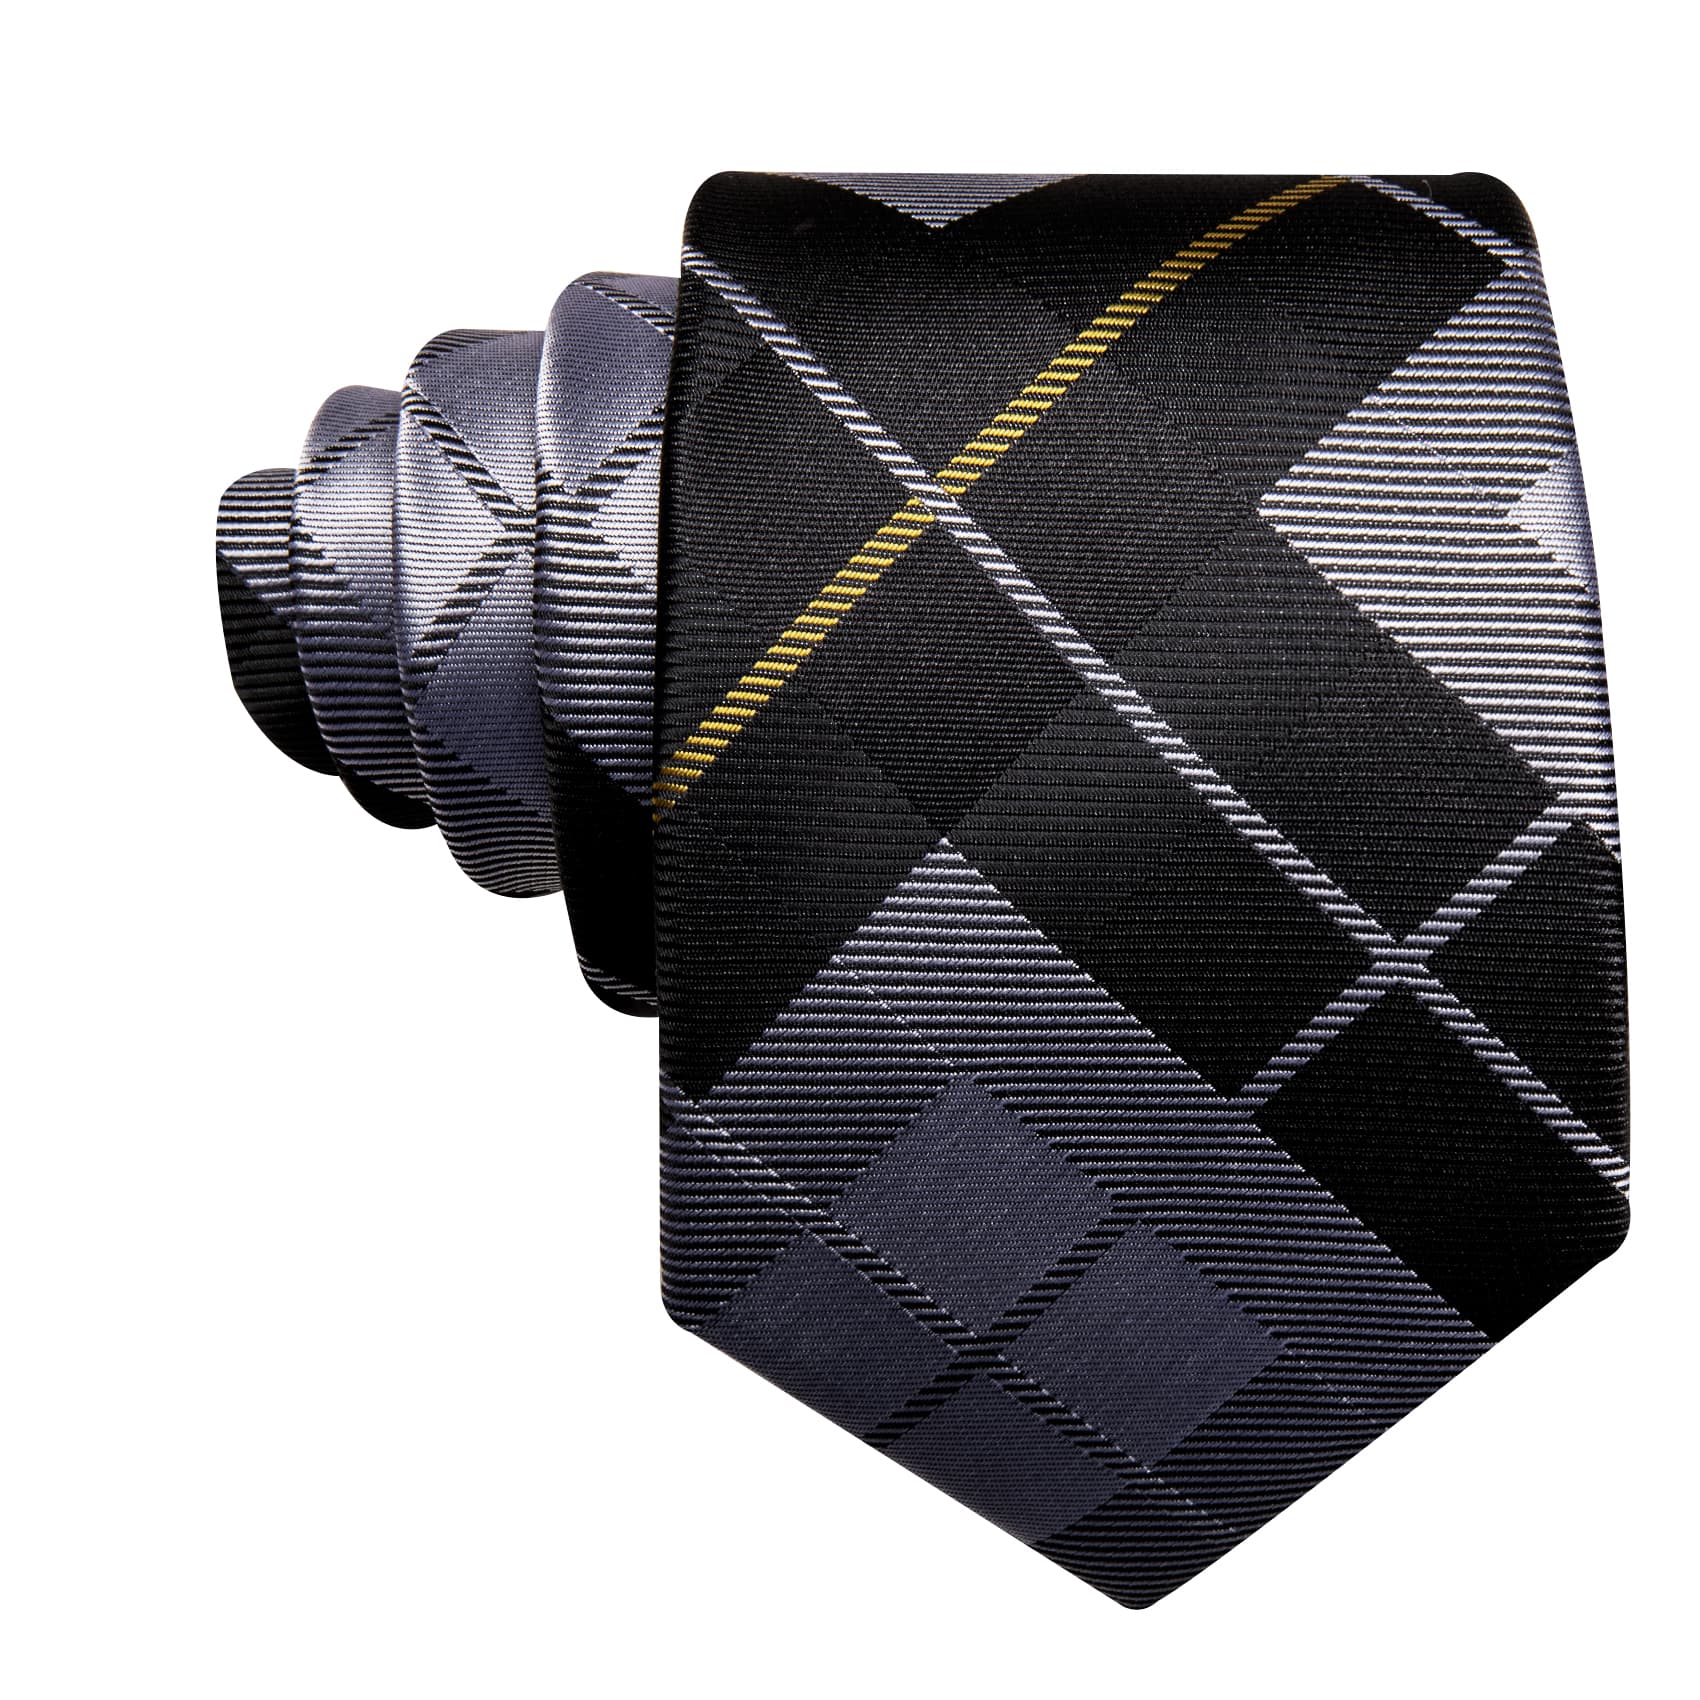 Plaid Tie Black Grey Checkered Necktie and Cufflink Set